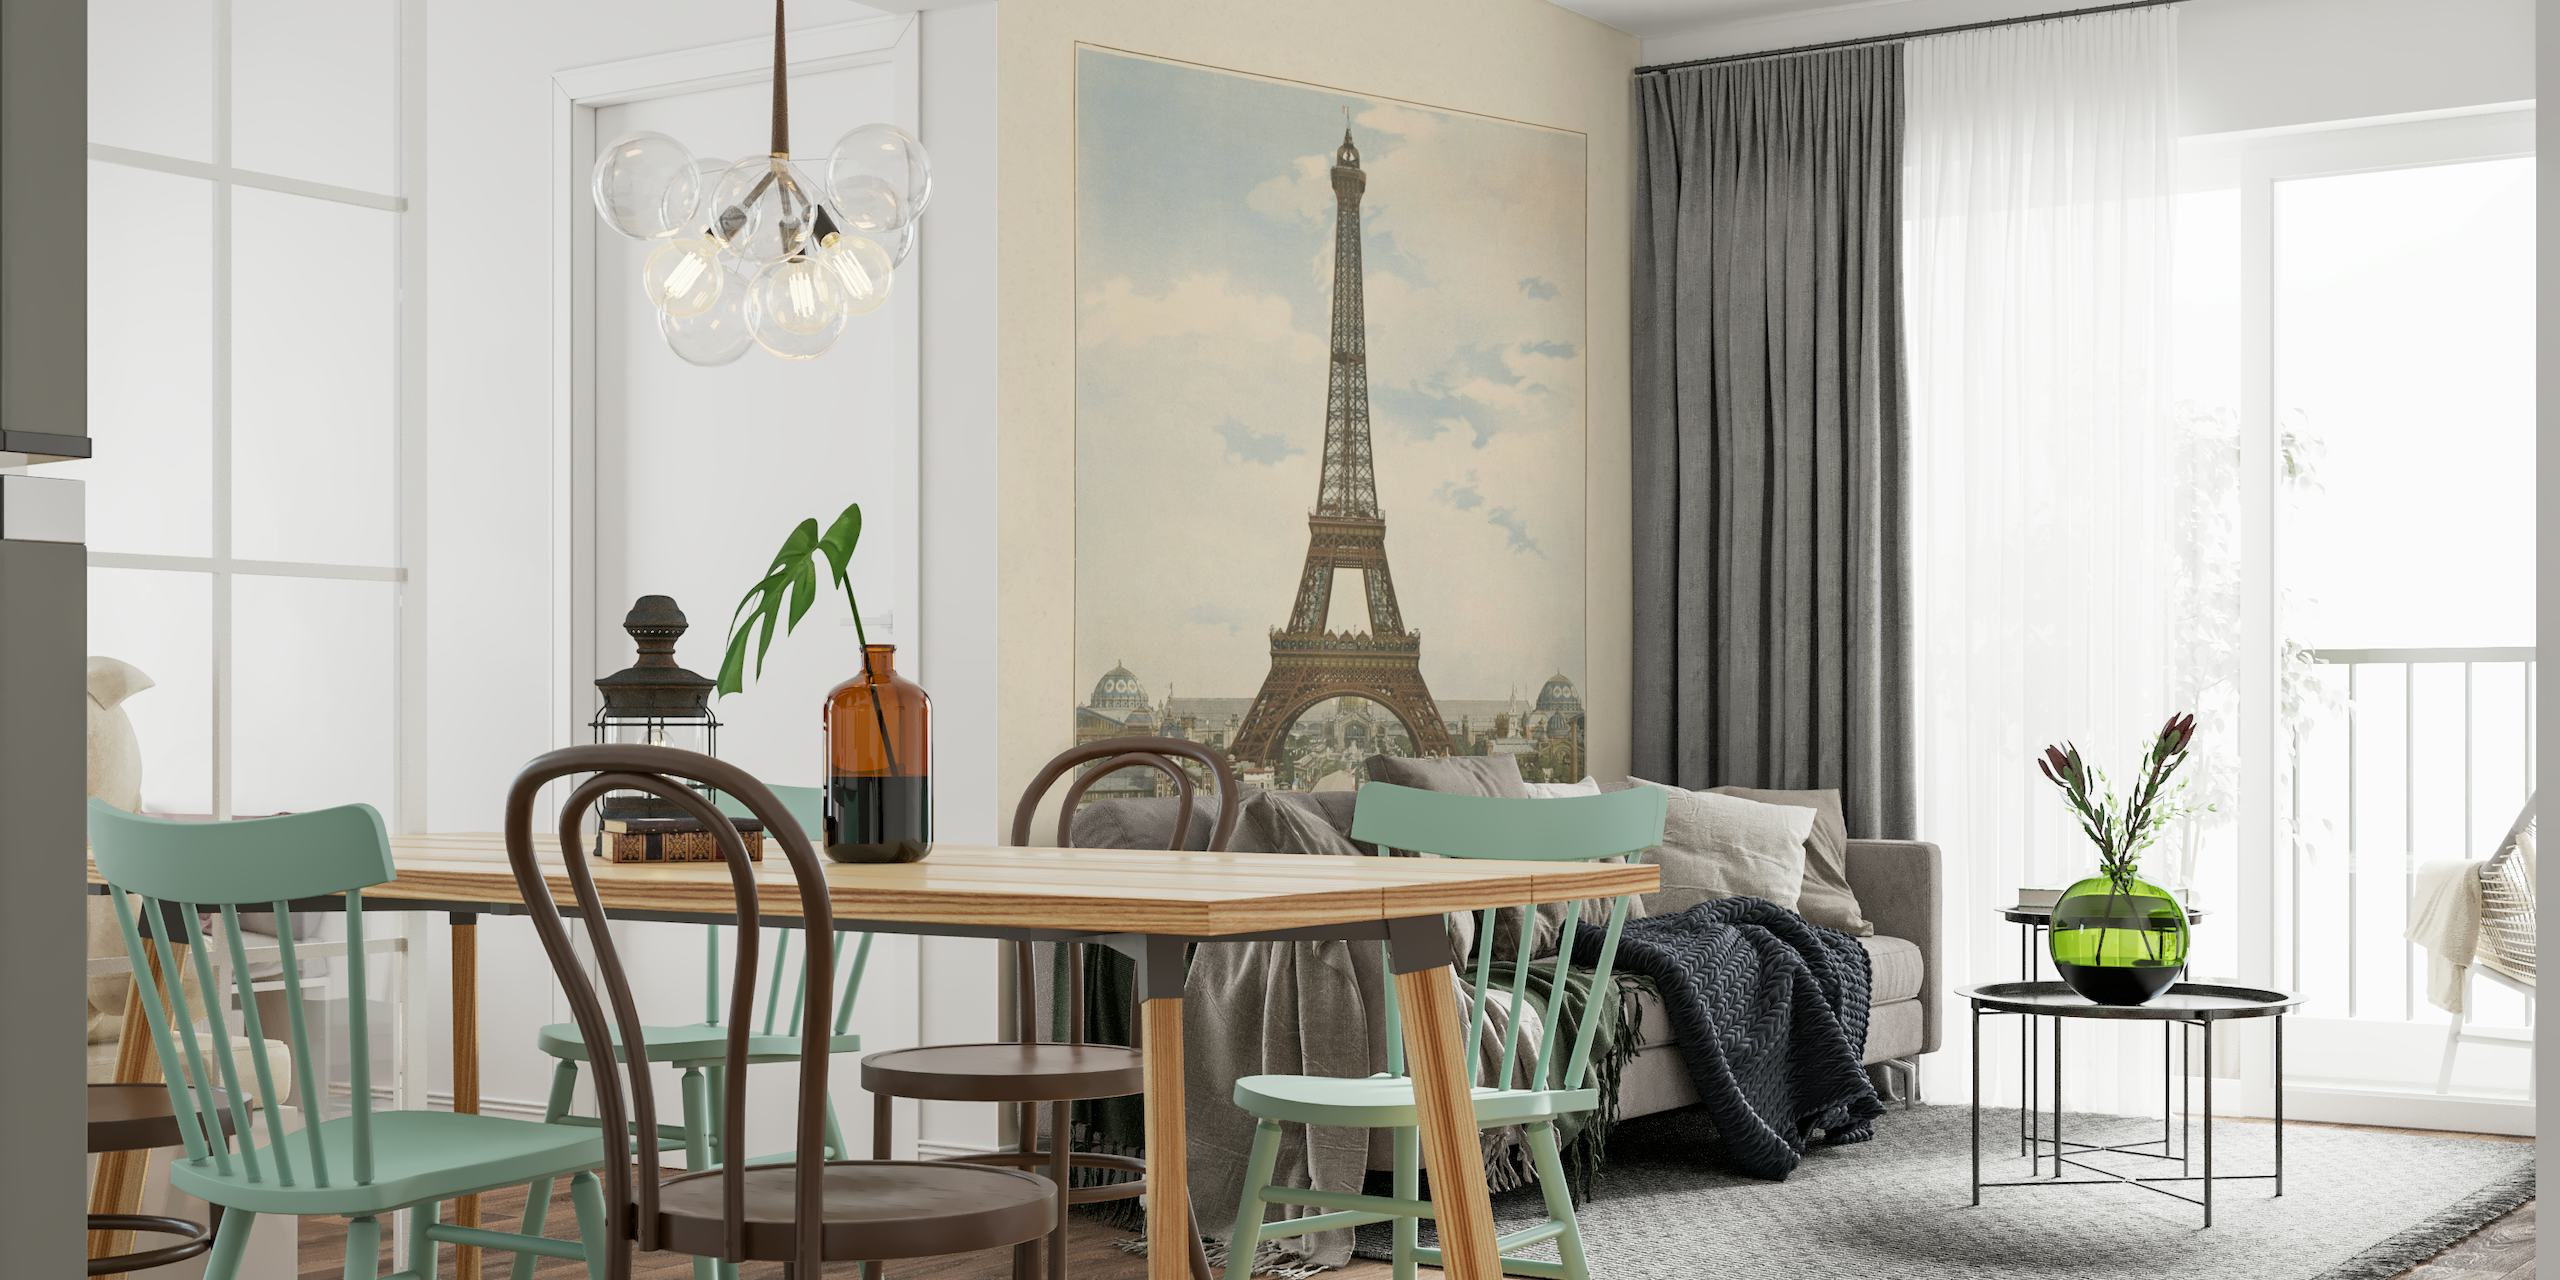 Väggmålning i vintagestil av Eiffeltornet i Paris med omgivande arkitektur under en lugn himmel.